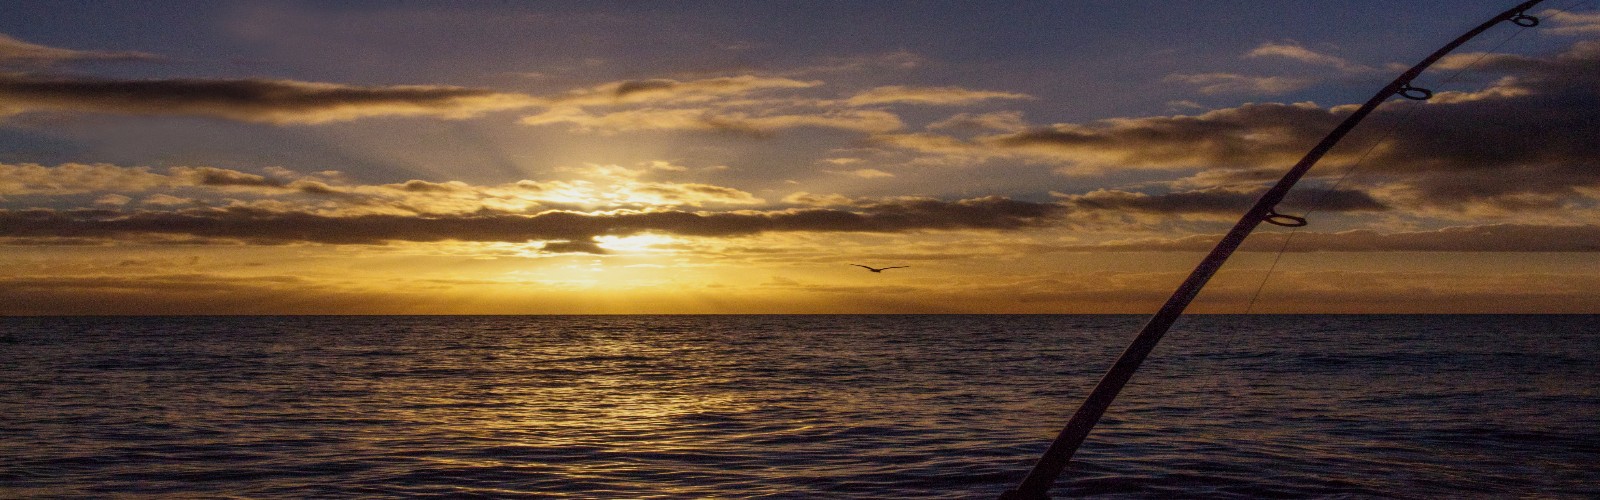 Sunrise on the Tasman Sea